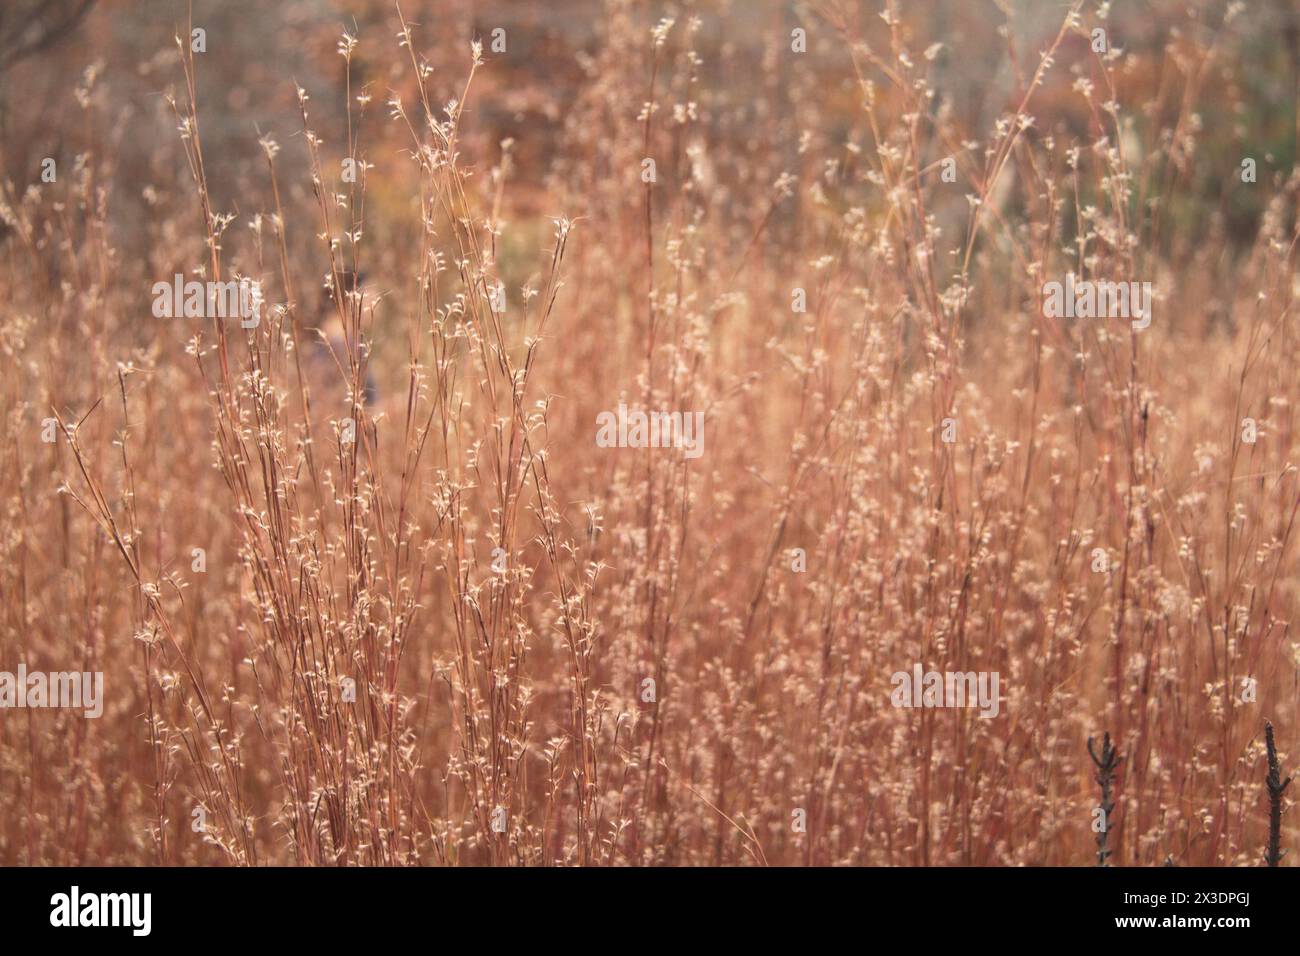 Virginia, U.S.A.  Field of Little Bluestem Grass in wintertime. Stock Photo